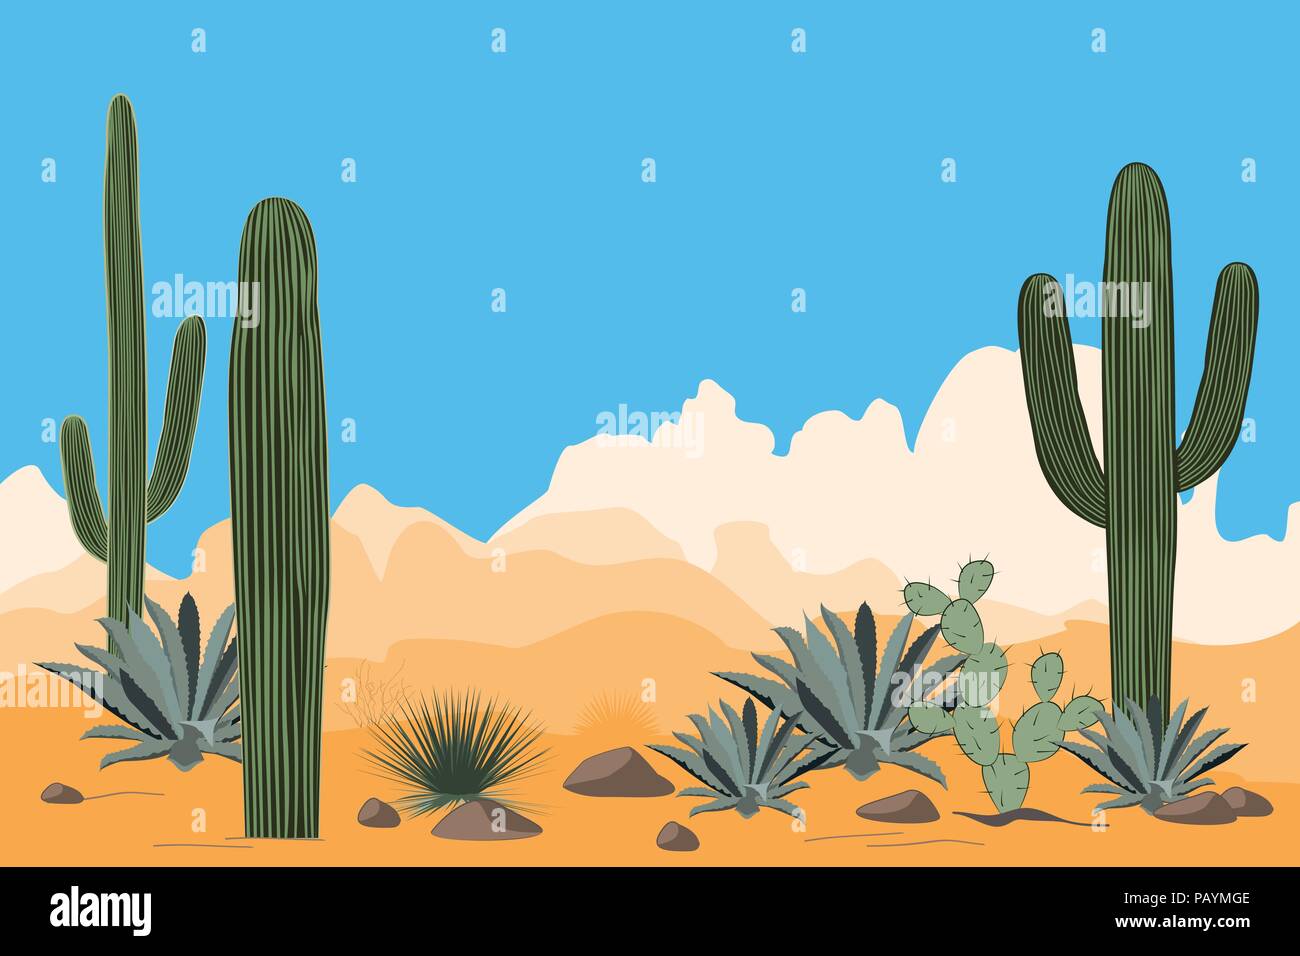 Landschaft der trockenen Wüste. Landschaft mit Saguaro Kakteen und Agaven. Blick auf die Berge, klare blaue Himmel im Hintergrund. Vector Illustration Stock Vektor